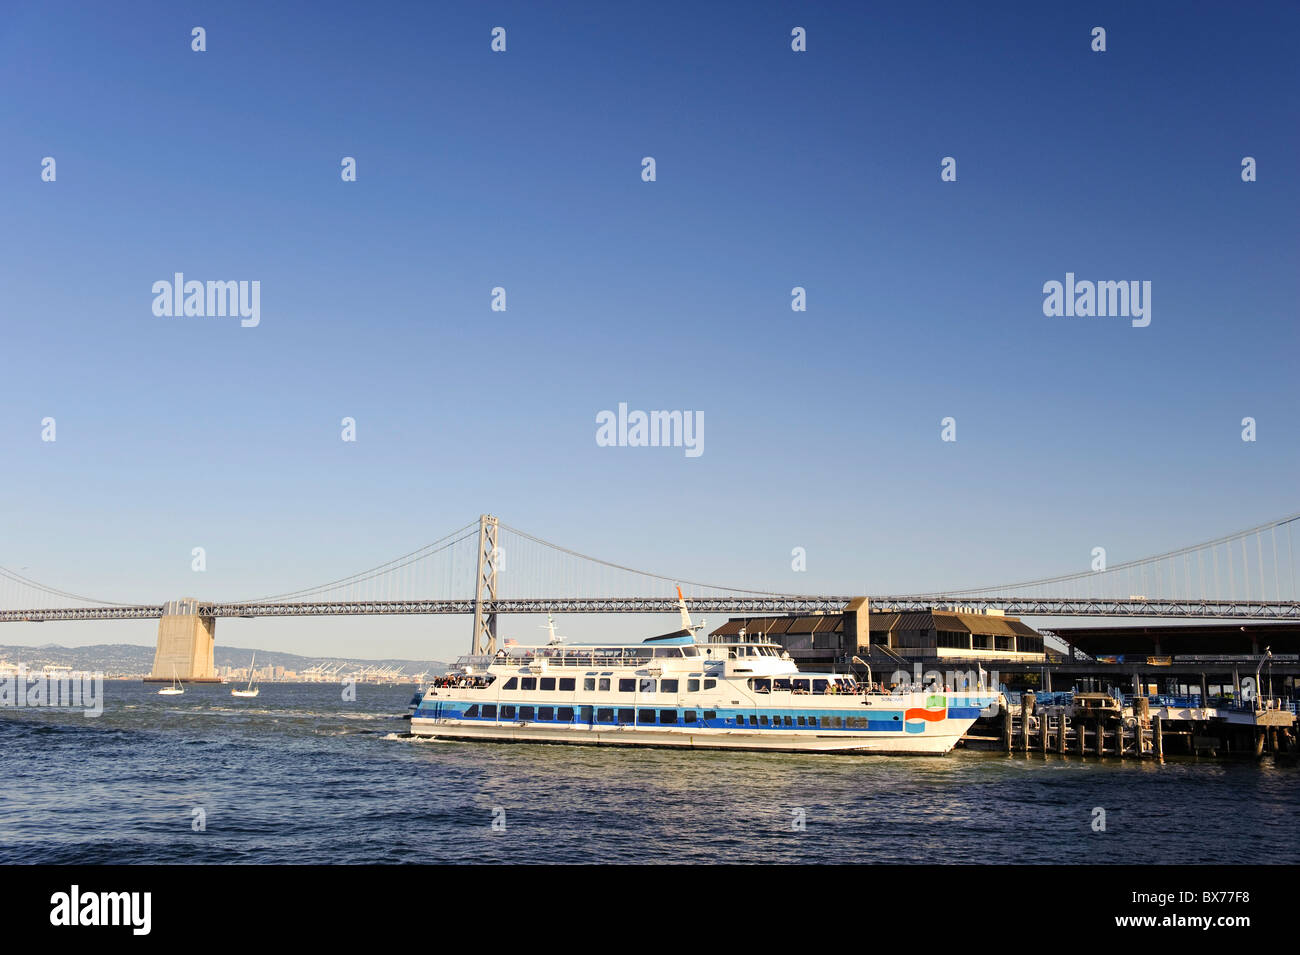 États-unis, Californie, San Francisco, de l'Embarcadero et Oakland Bay Bridge Banque D'Images